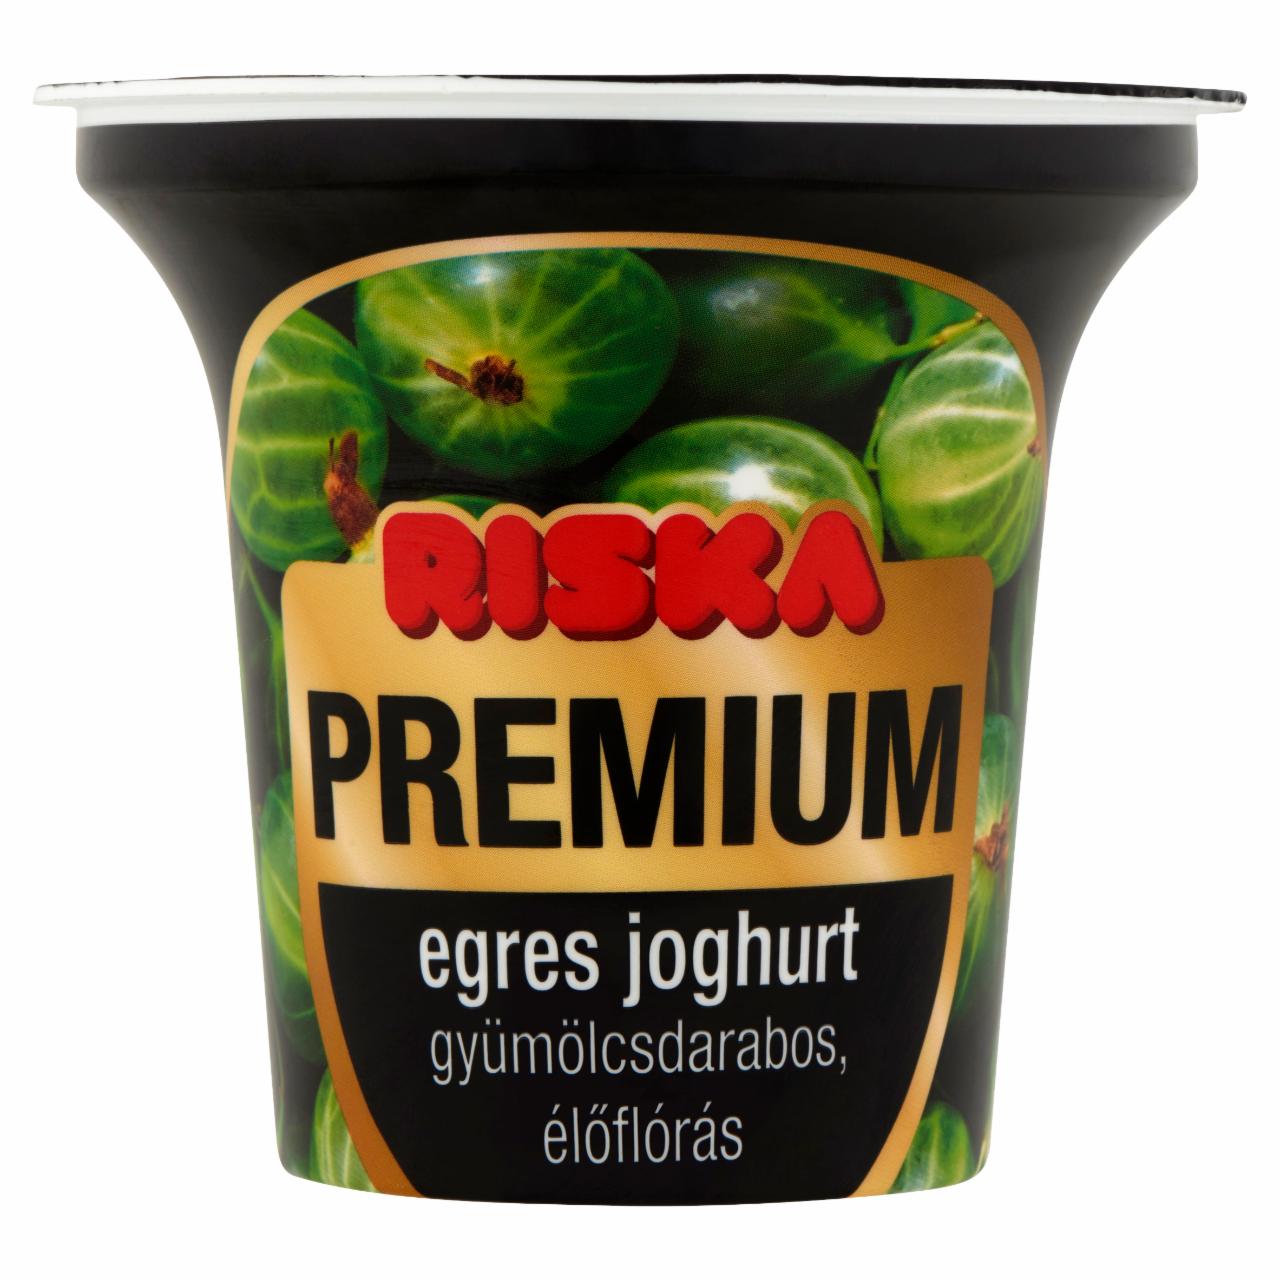 Képek - Riska Premium gyümölcsdarabos, élőflórás egres joghurt 200 g